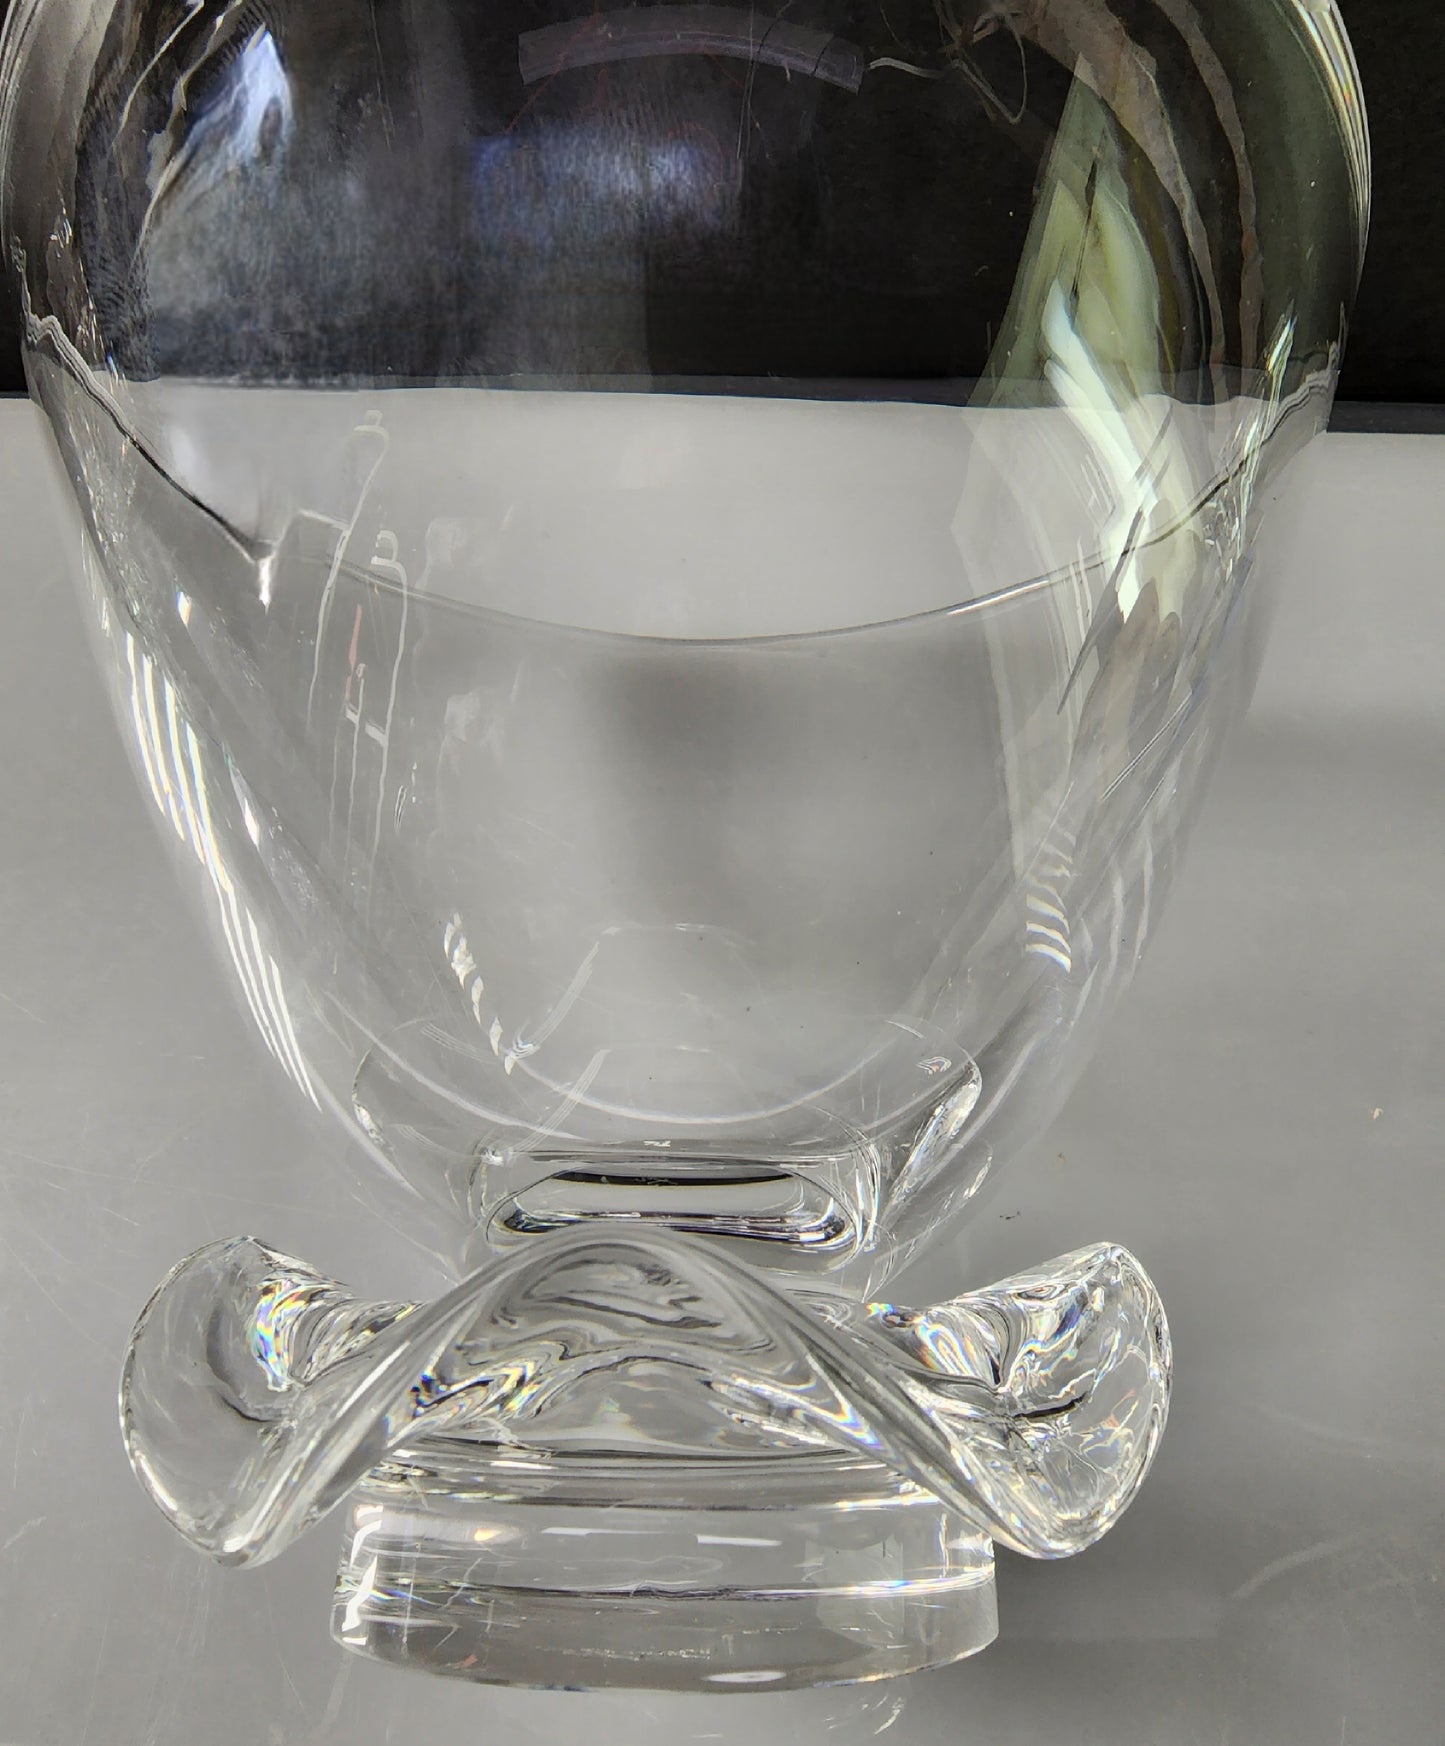 Steuben Signed vase / bowl Glass